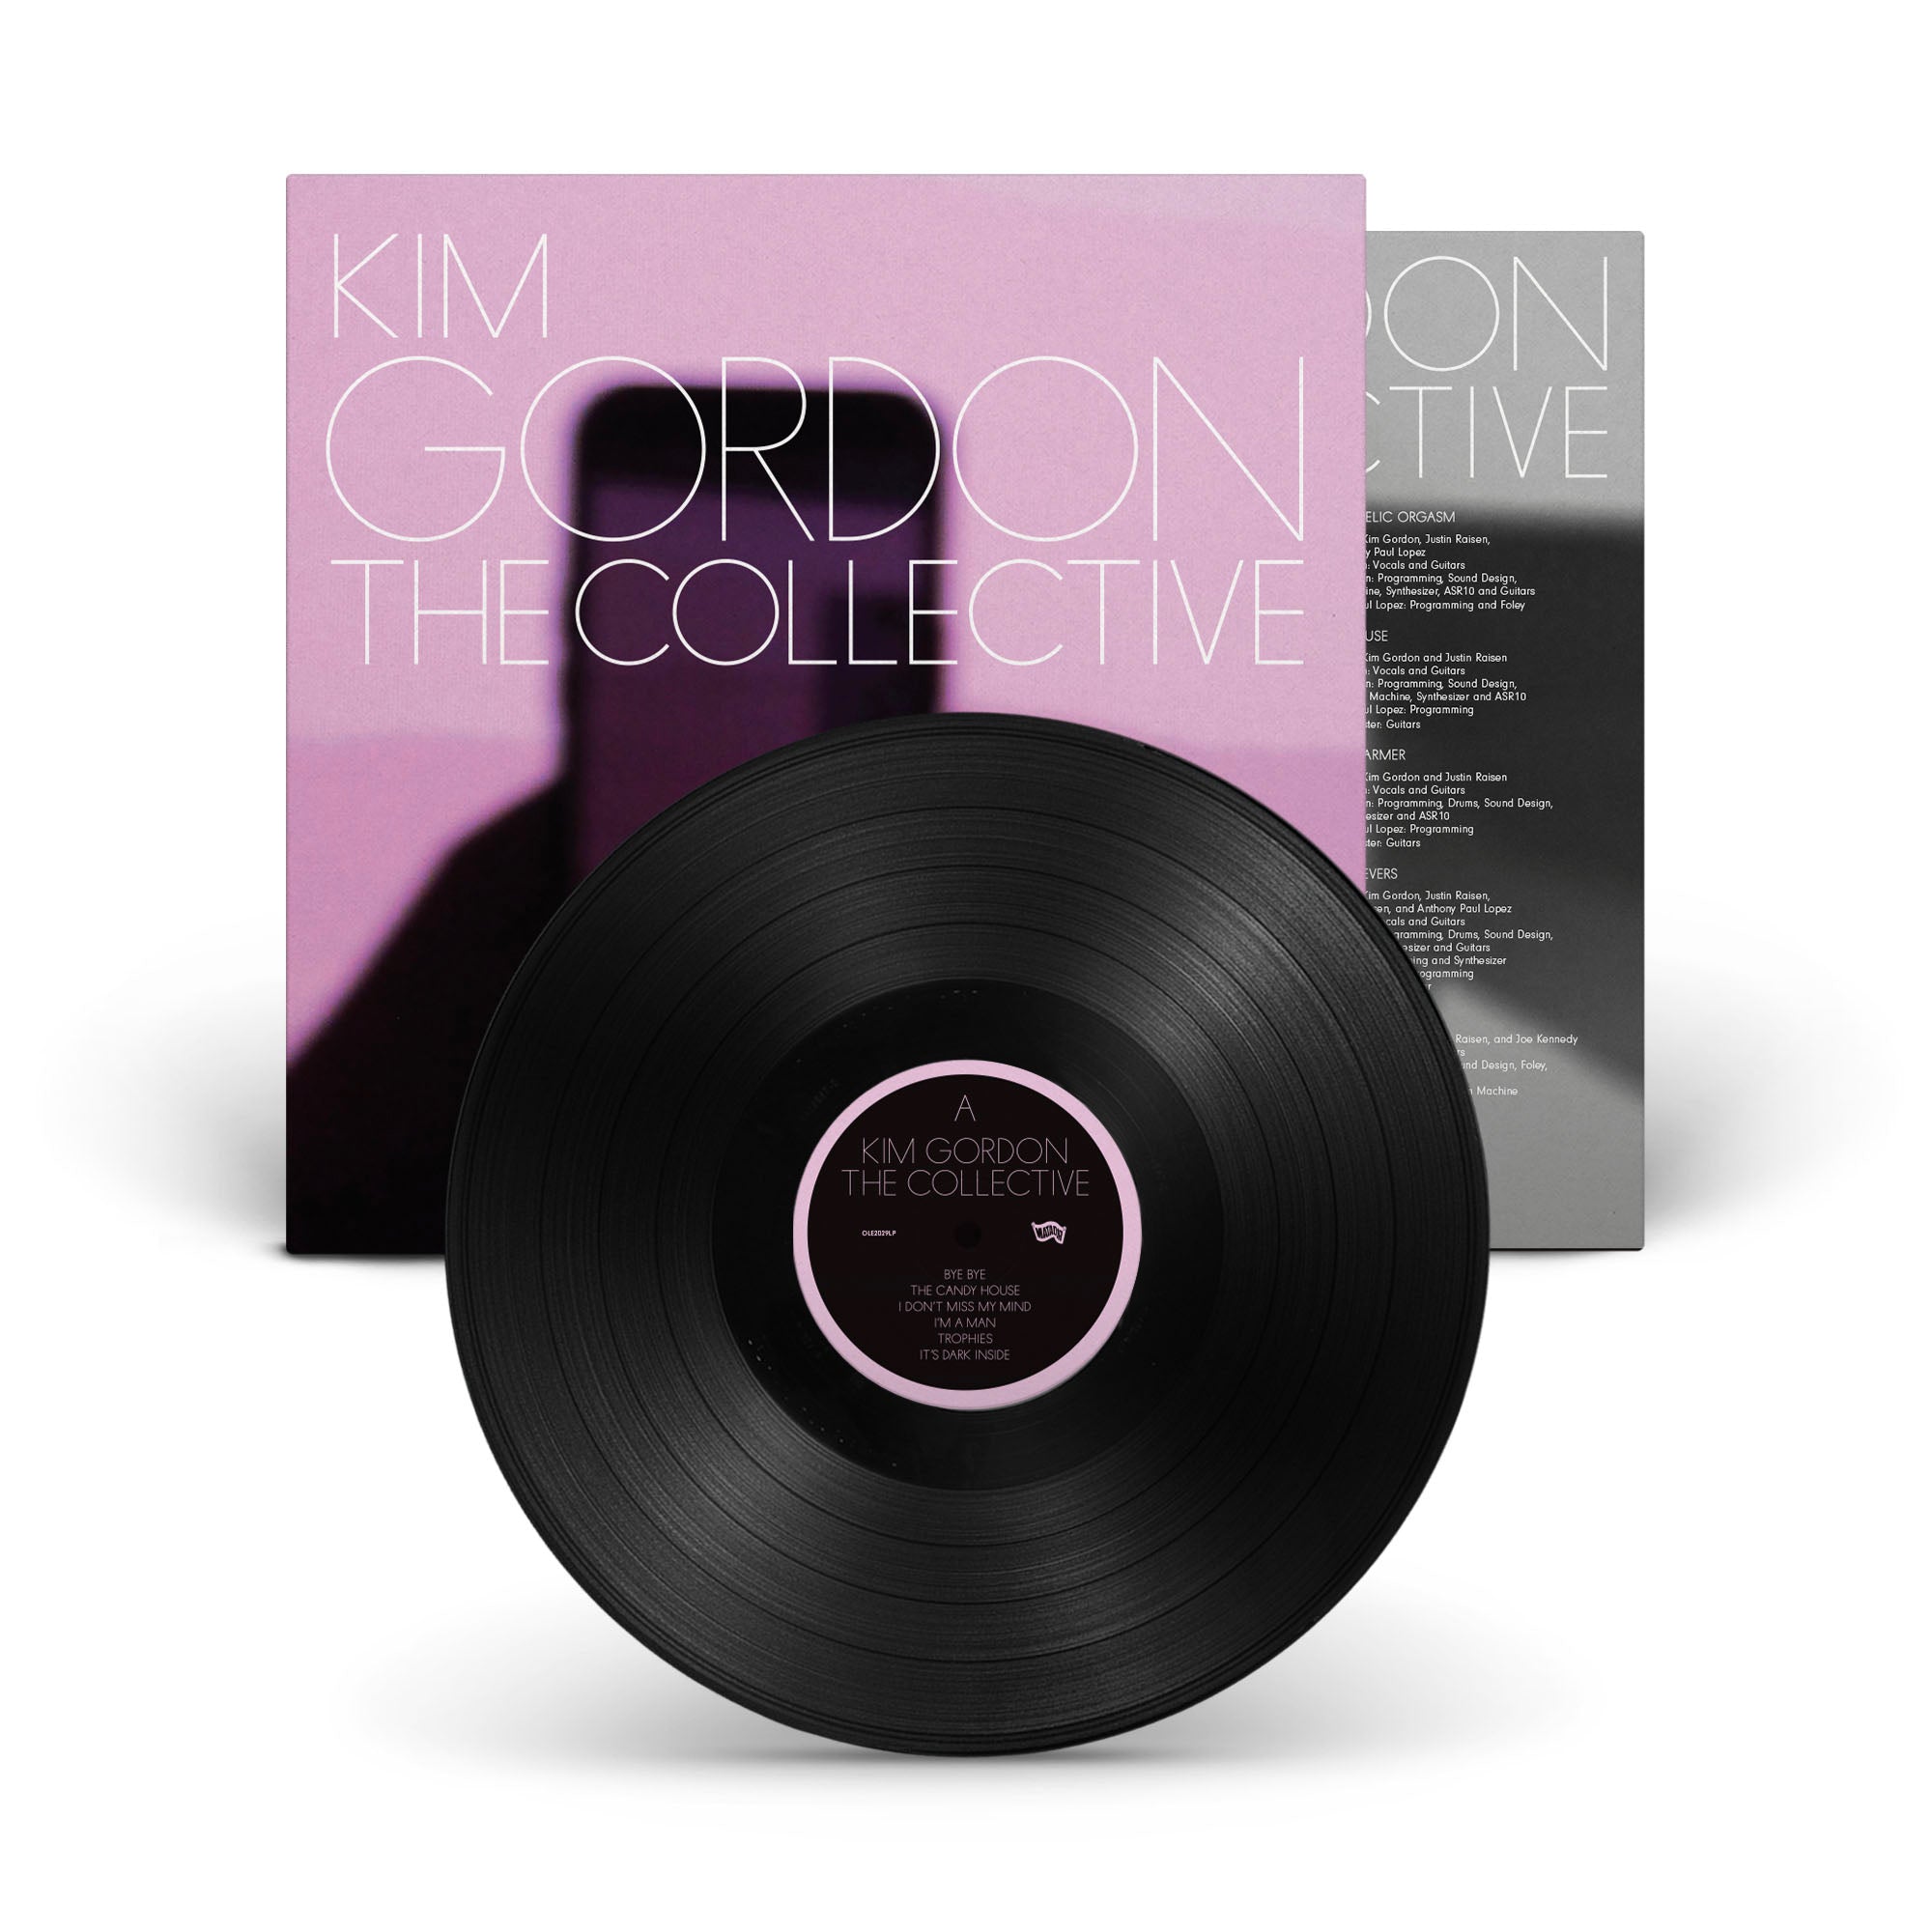 Kim Gordon - The Collective: Vinyl LP